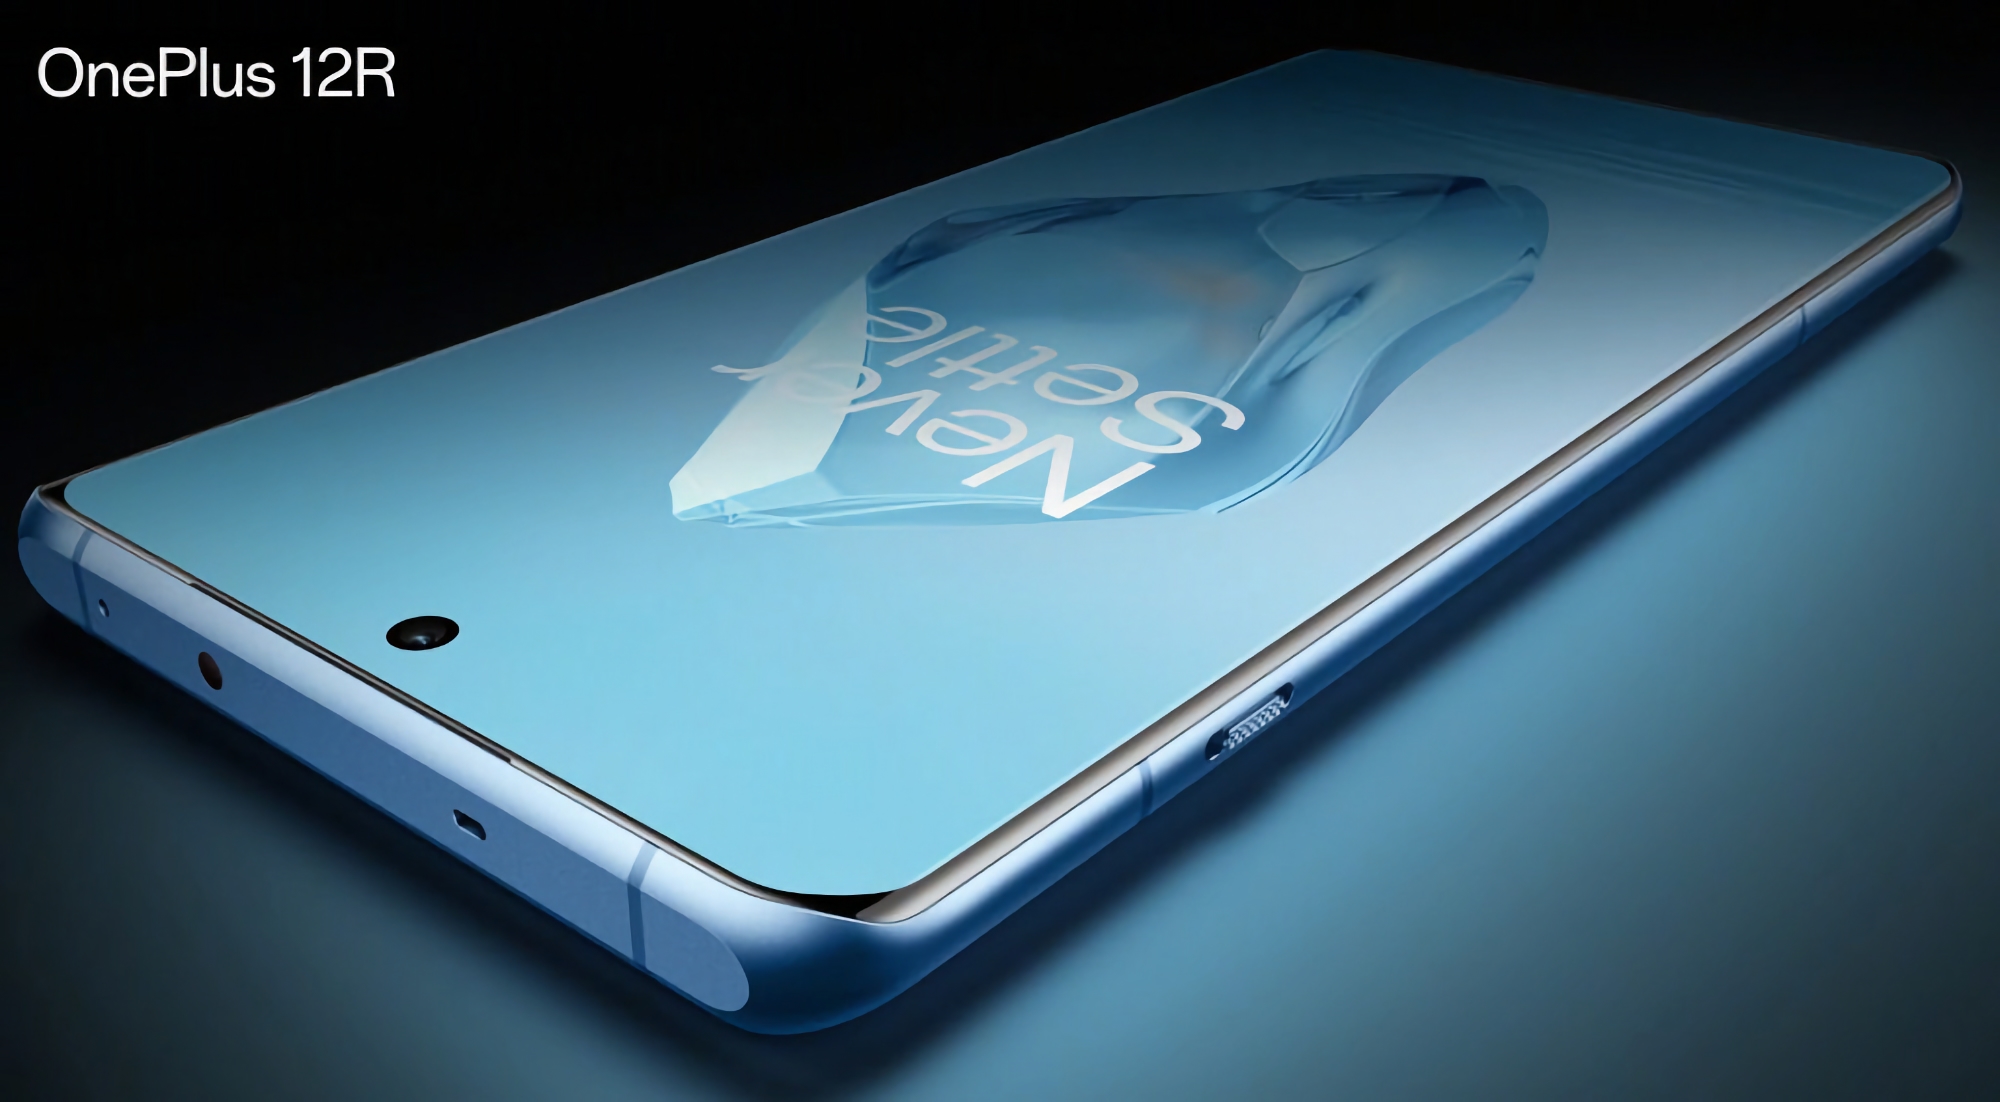 C'est officiel : le OnePlus 12R sera doté d'un écran LTPO ProXDR 120Hz et d'une batterie de 5 500mAh.